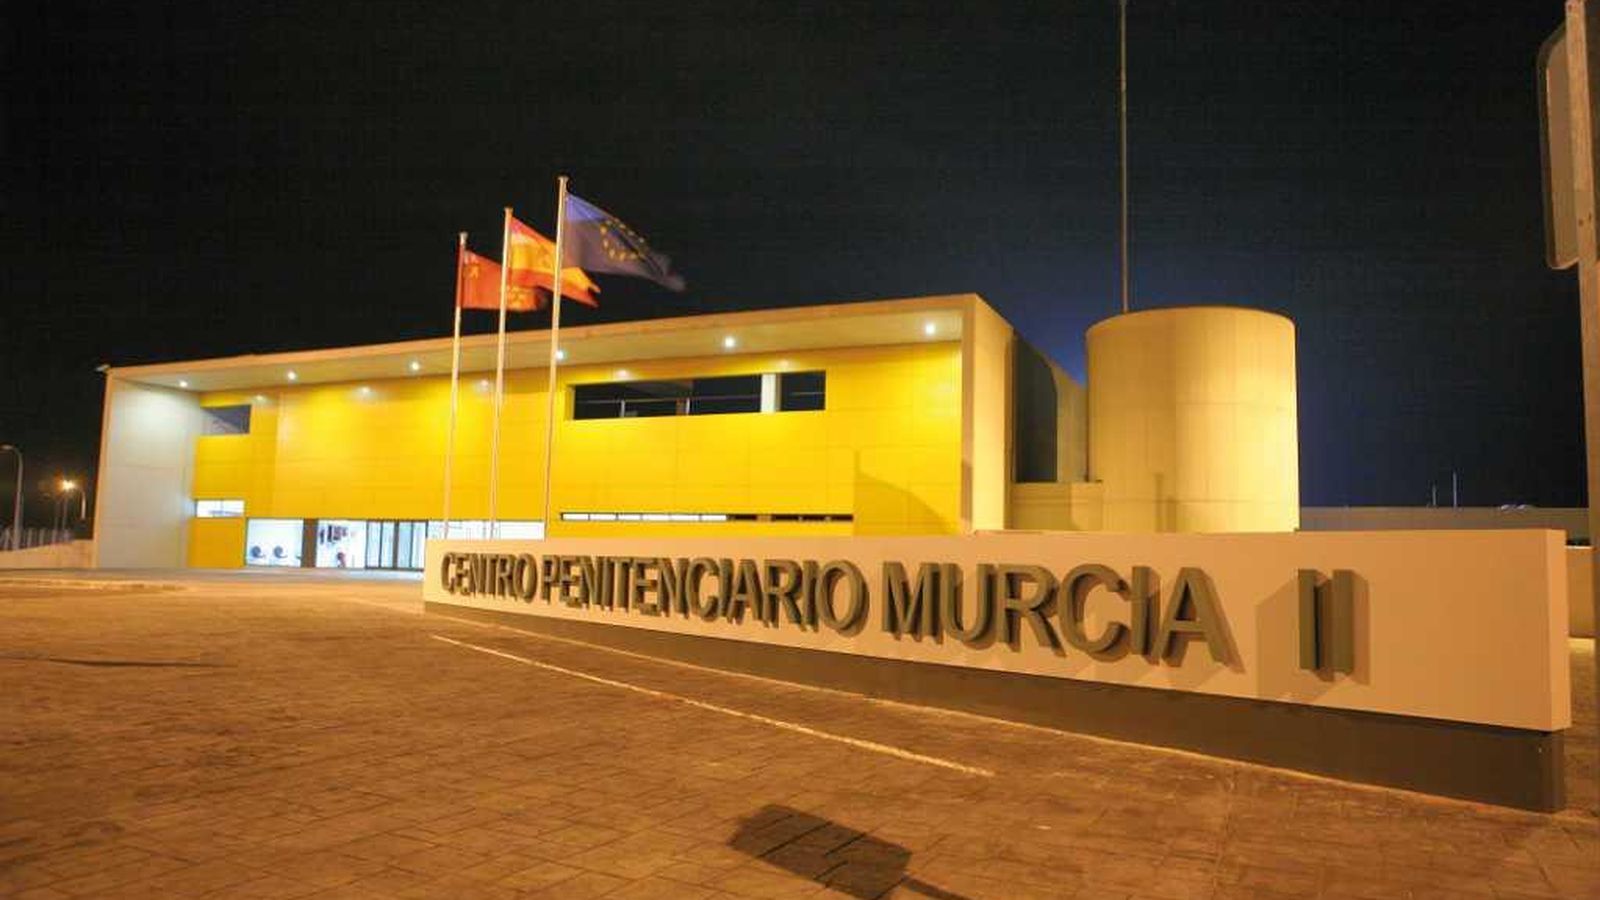 Foto: entro Penitenciario de Murcia II. (Ministerio del Interior)